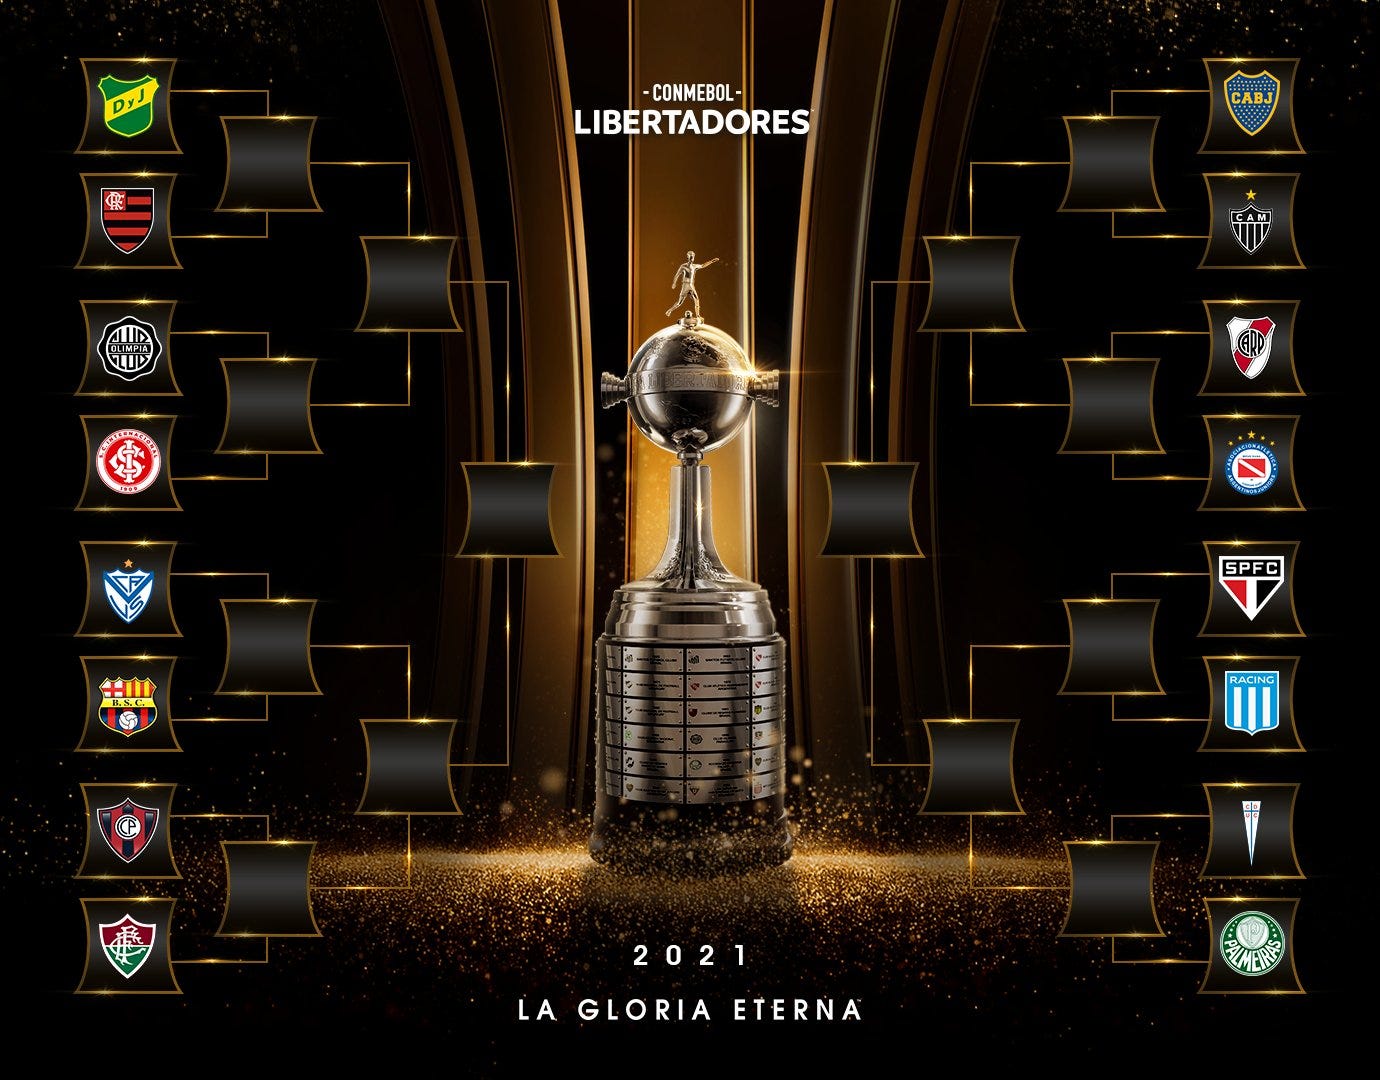 Cuartos final Copa Libertadores 2021: cuándo son, fixture, partidos y árbitros | Goal.com Espana